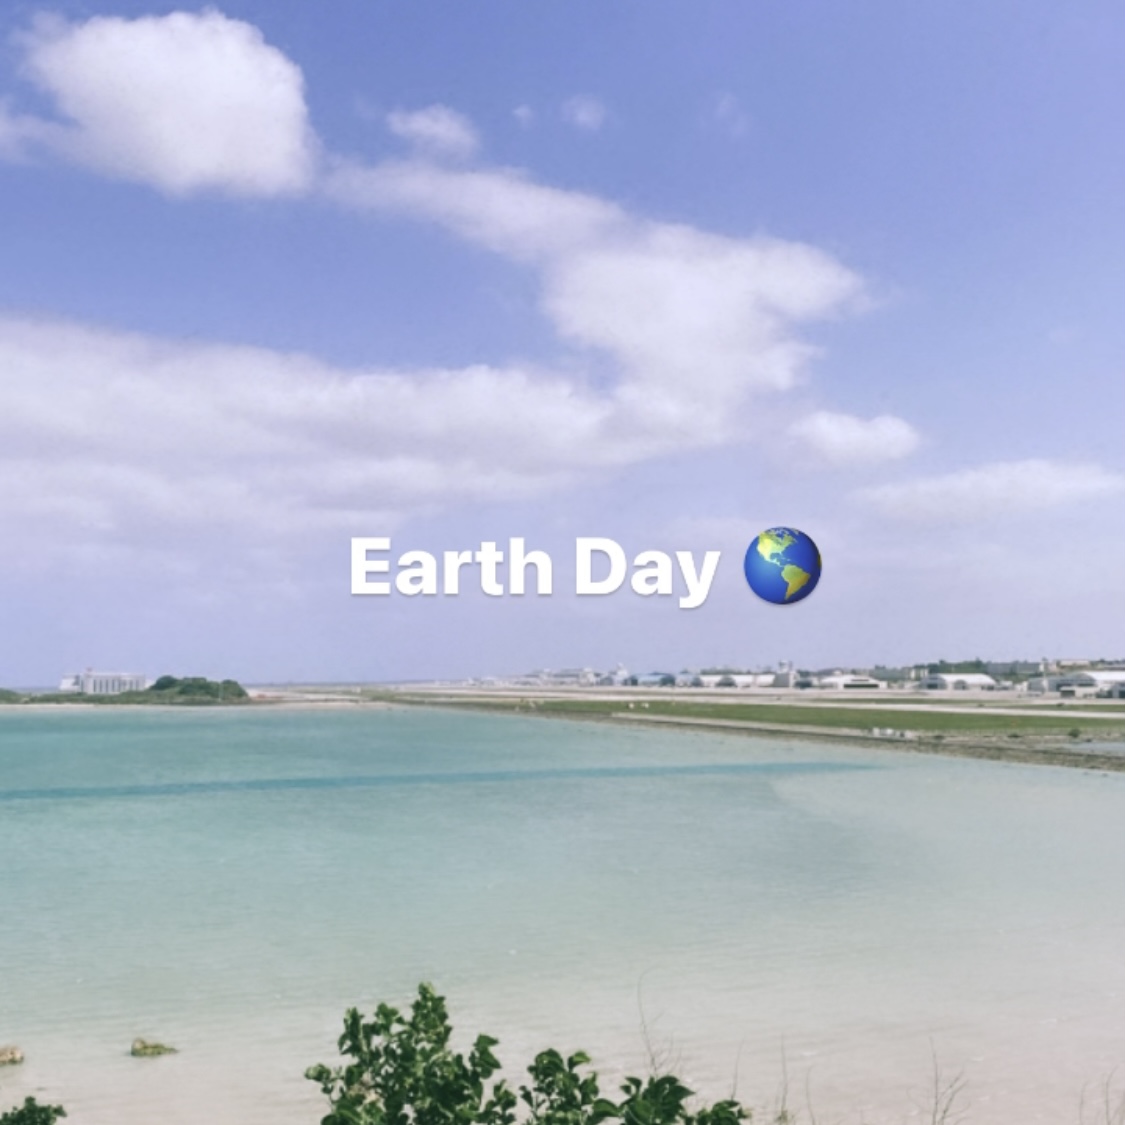 4月22日は「Earth Day 🌎」